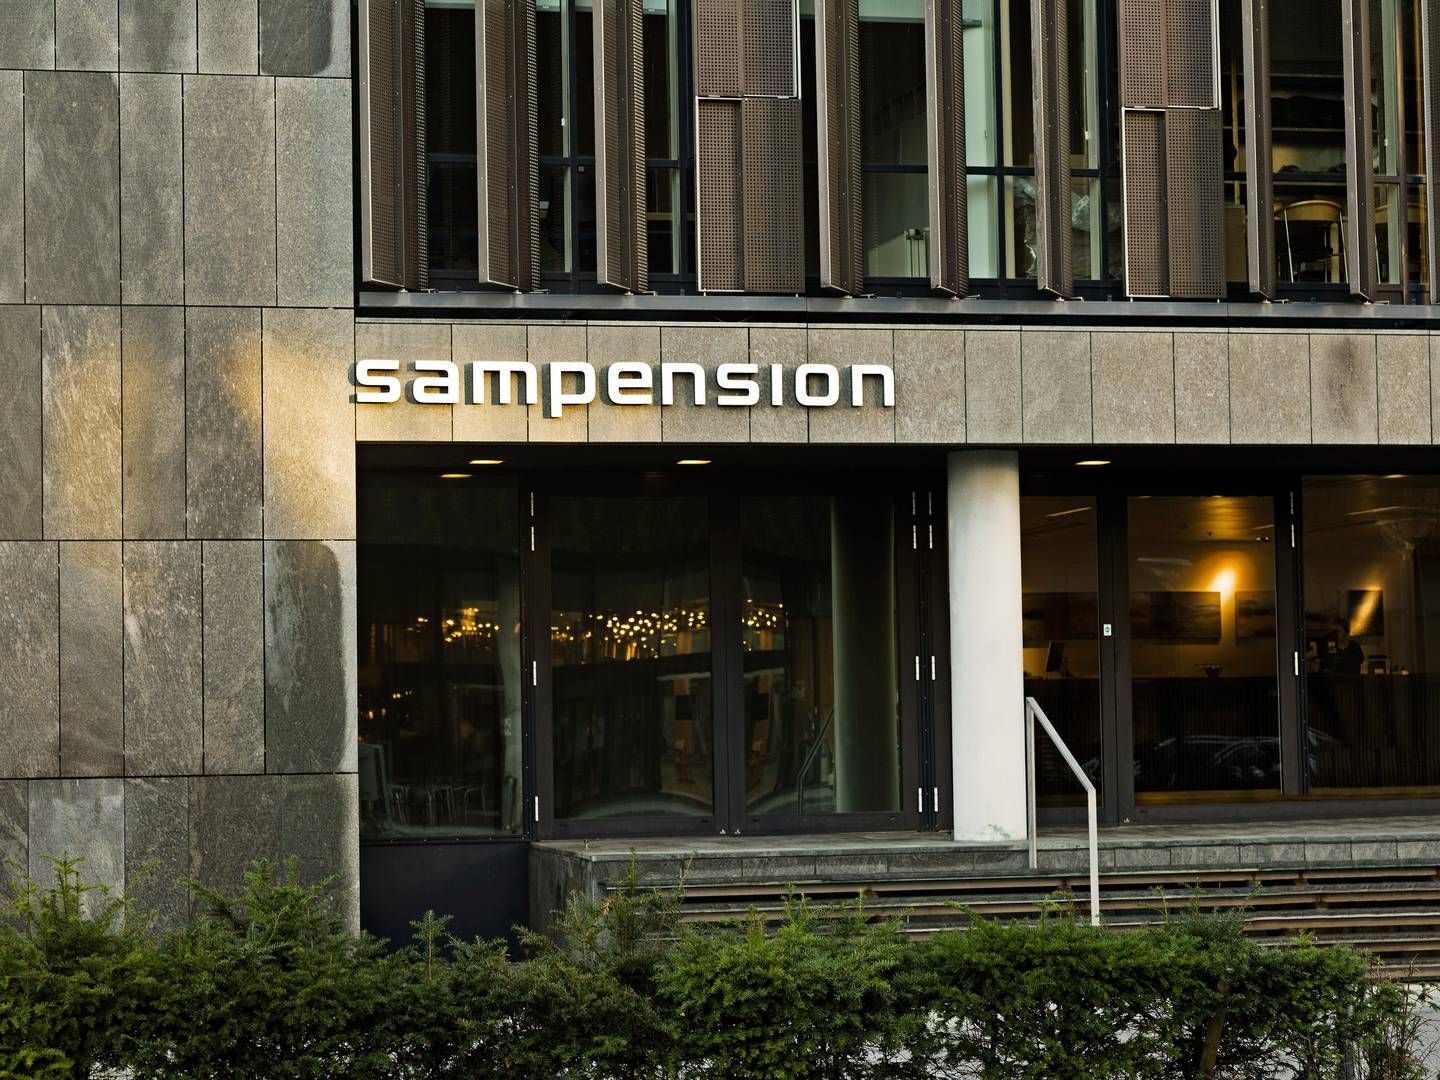 Sampension hører til blandt landets største pensionsselskaber og havde ved udgangen af 2022 aktiver for knap 270 mia. kr. | Foto: Pr/sampension